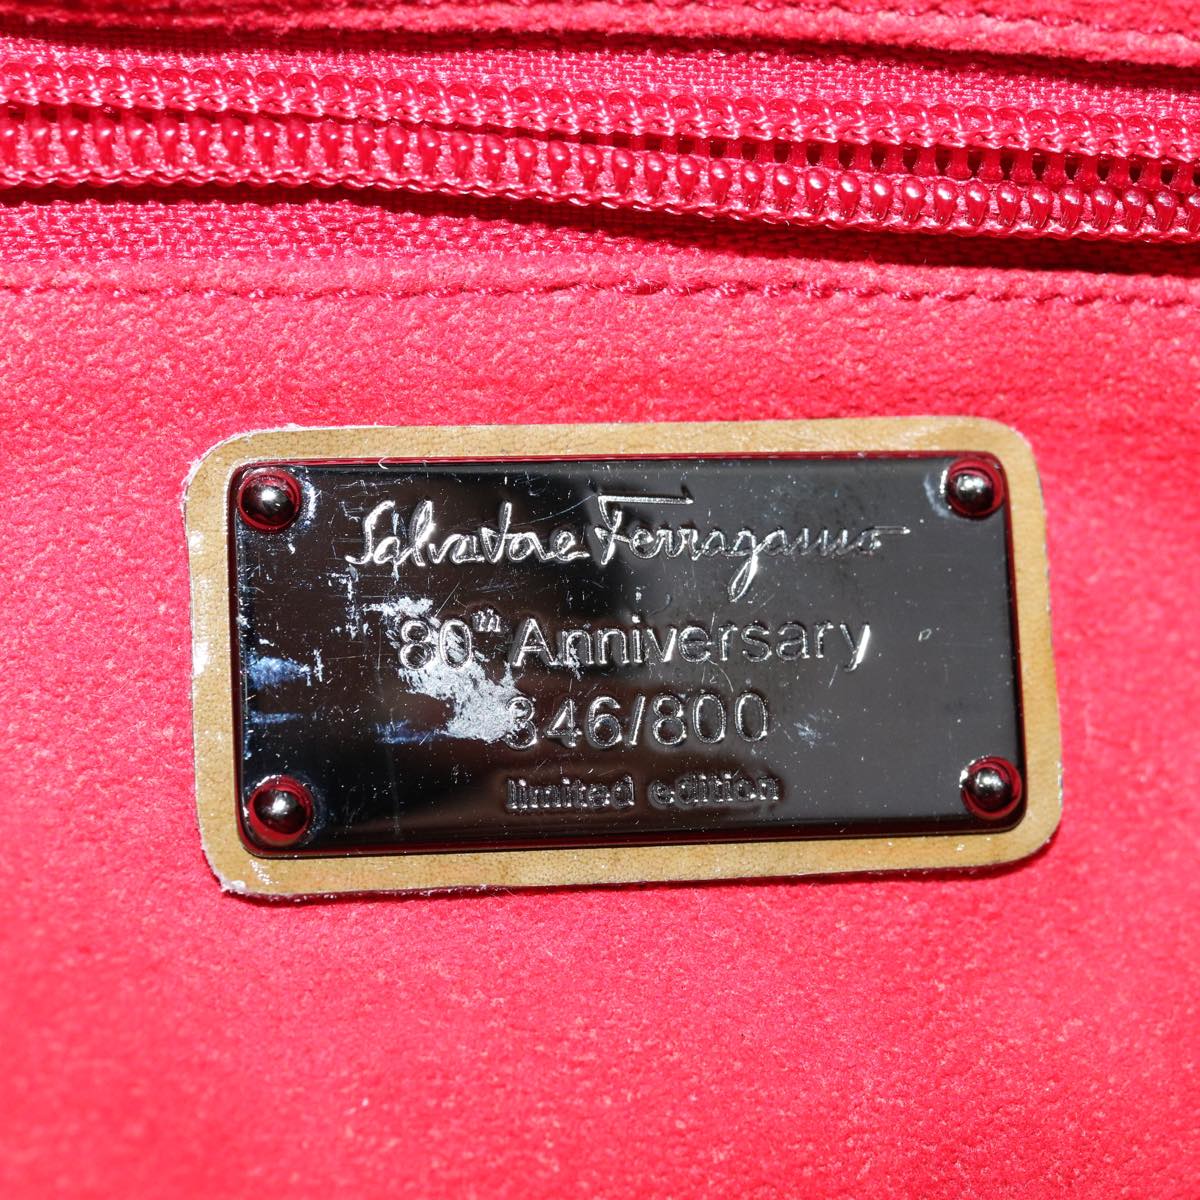 Salvatore Ferragamo Gancini Hand Bag Patent leather Khaki Auth 67073